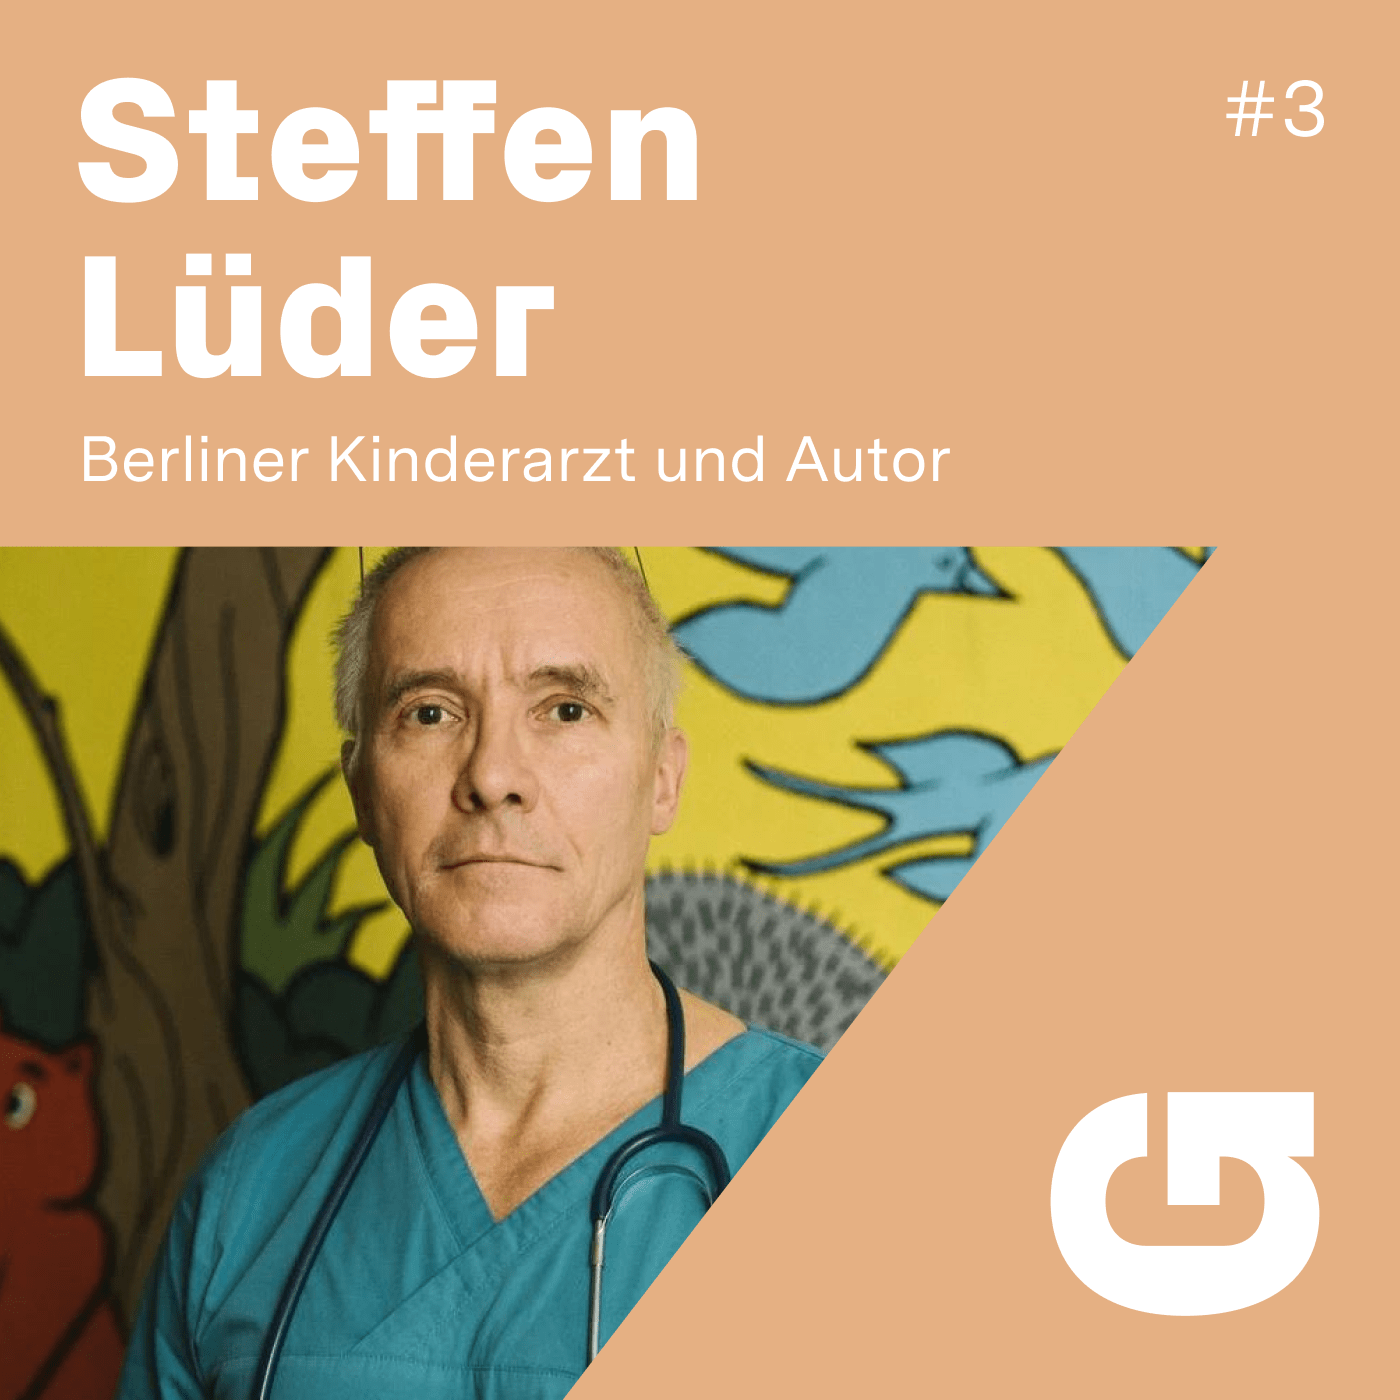 G#3 Steffen Lüder: Berliner Kinderarzt und Buchautor